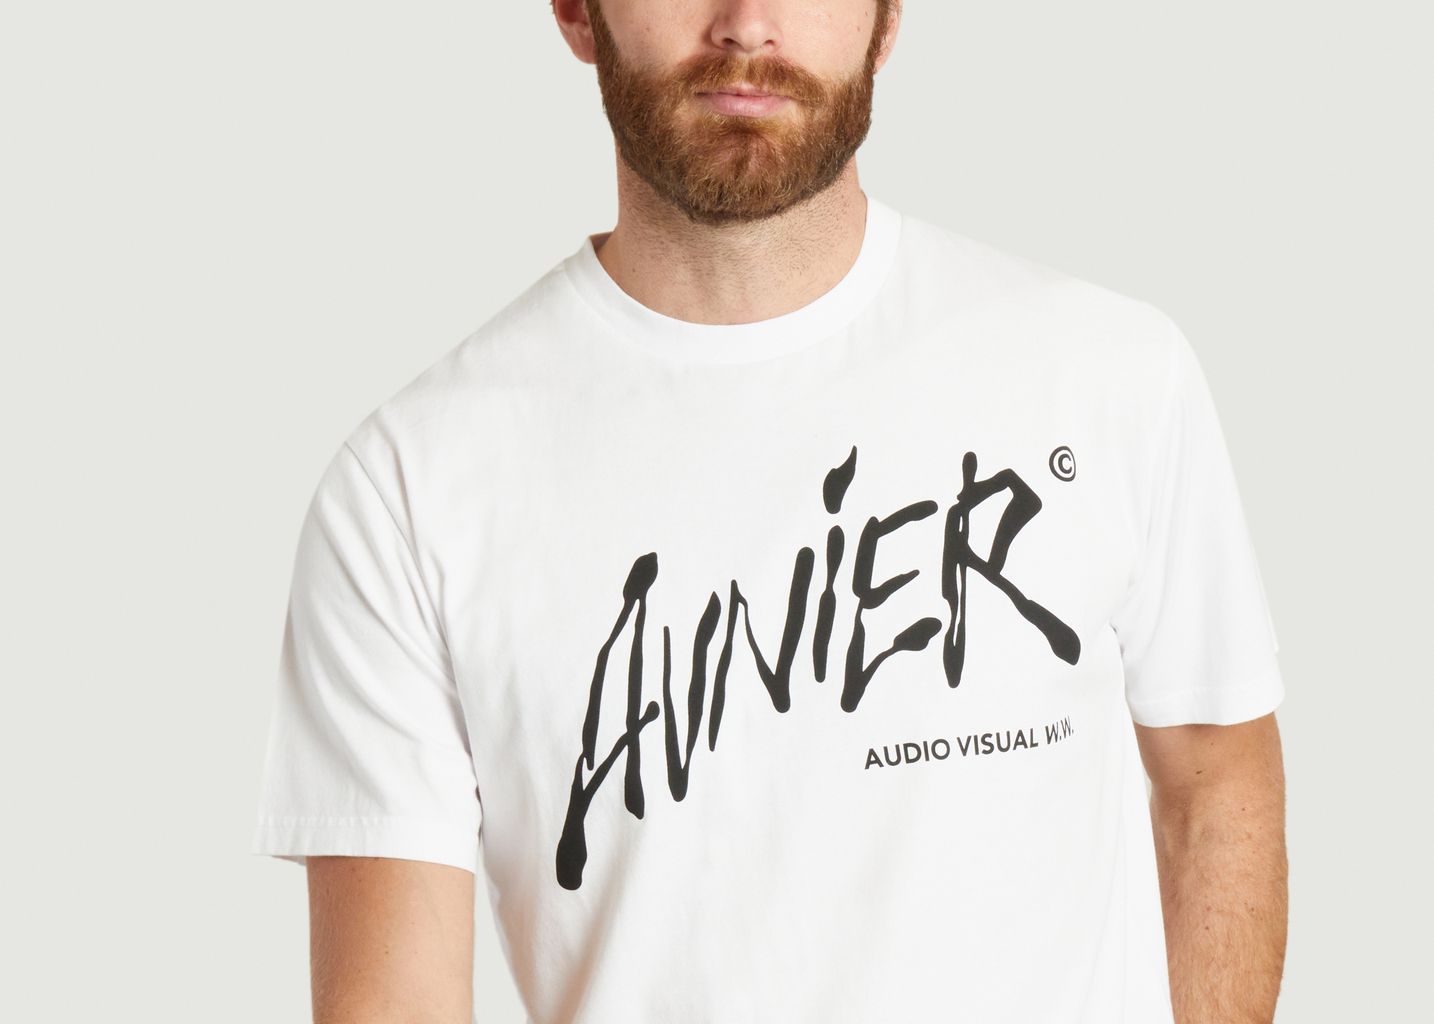 T-Shirt Source - AVNIER